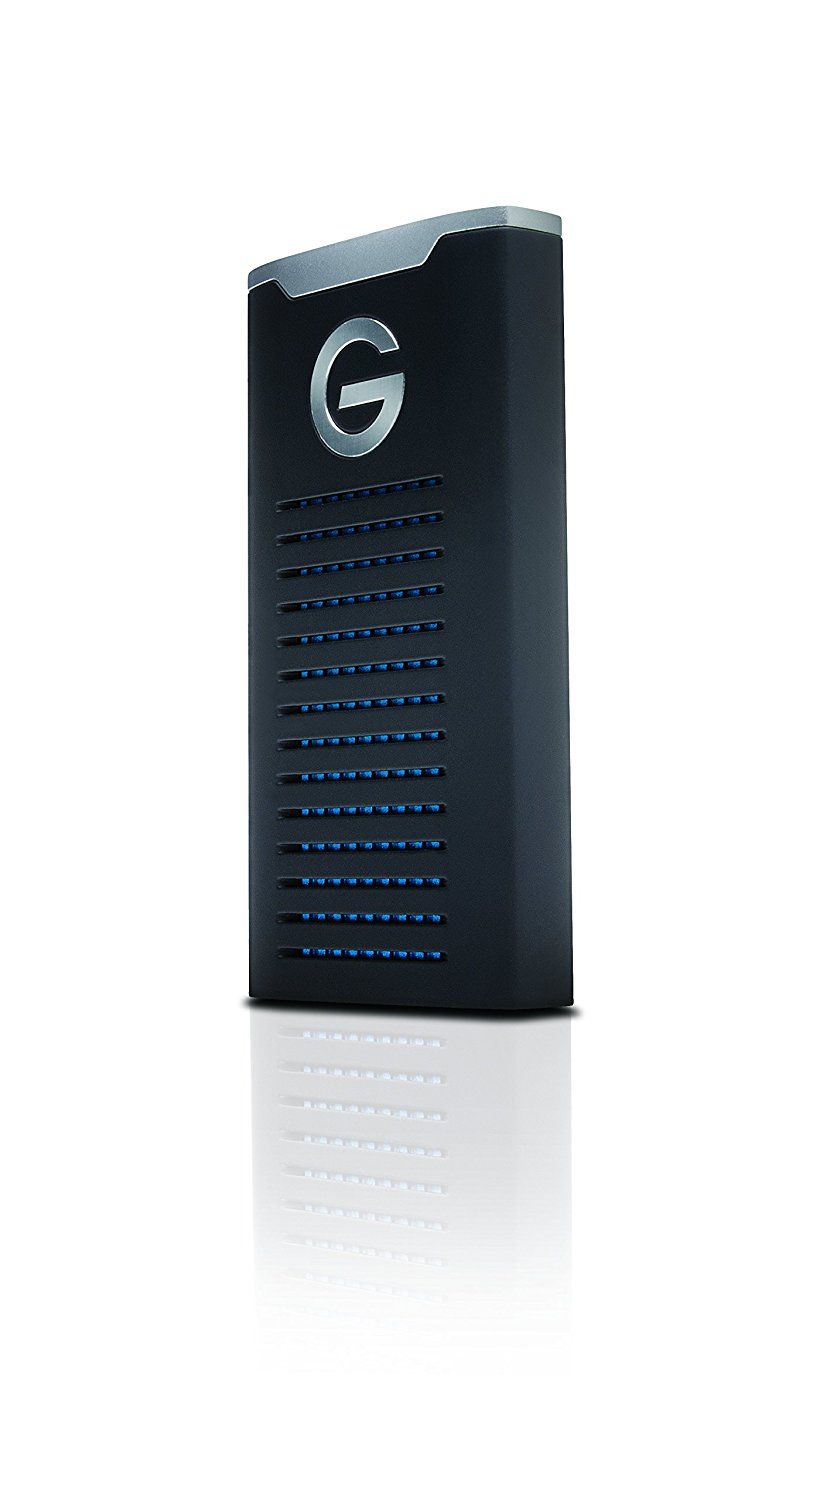 G-Technology Мобильный твердотельный накопитель G-Drive емкостью 1 ТБ R-Series - подключение USB-C (USB 3.1 Gen 2) - 0G06053